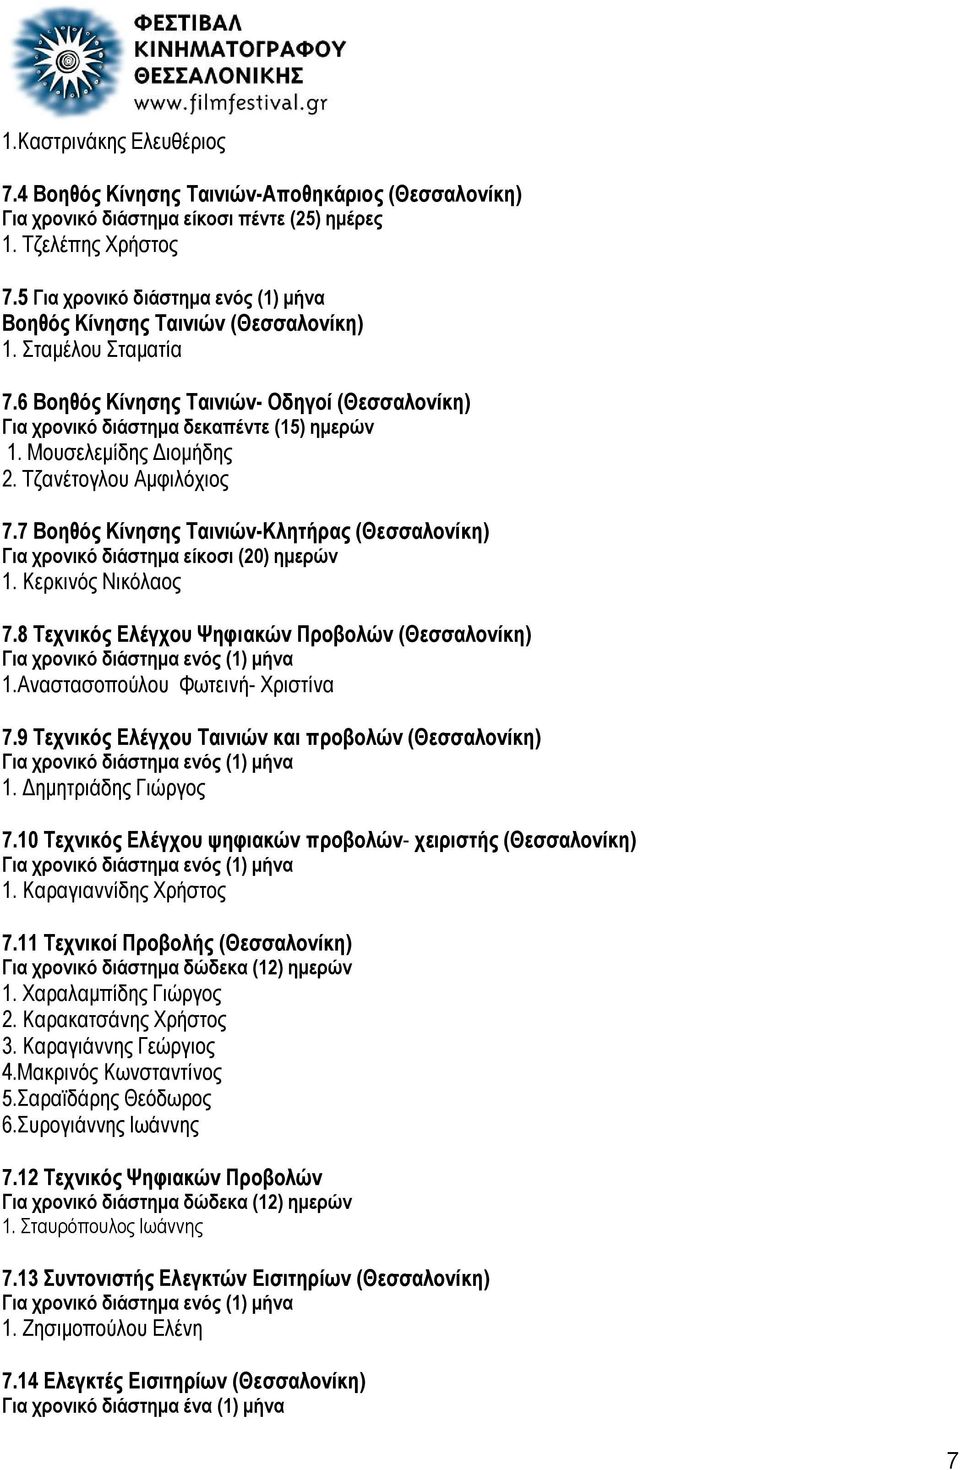 7 Βοηθός Κίνησης Ταινιών-Κλητήρας (Θεσσαλονίκη) Για χρονικό διάστημα είκοσι (20) ημερών 1. Κερκινός Νικόλαος 7.8 Τεχνικός Ελέγχου Ψηφιακών Προβολών (Θεσσαλονίκη) 1.Αναστασοπούλου Φωτεινή- Χριστίνα 7.